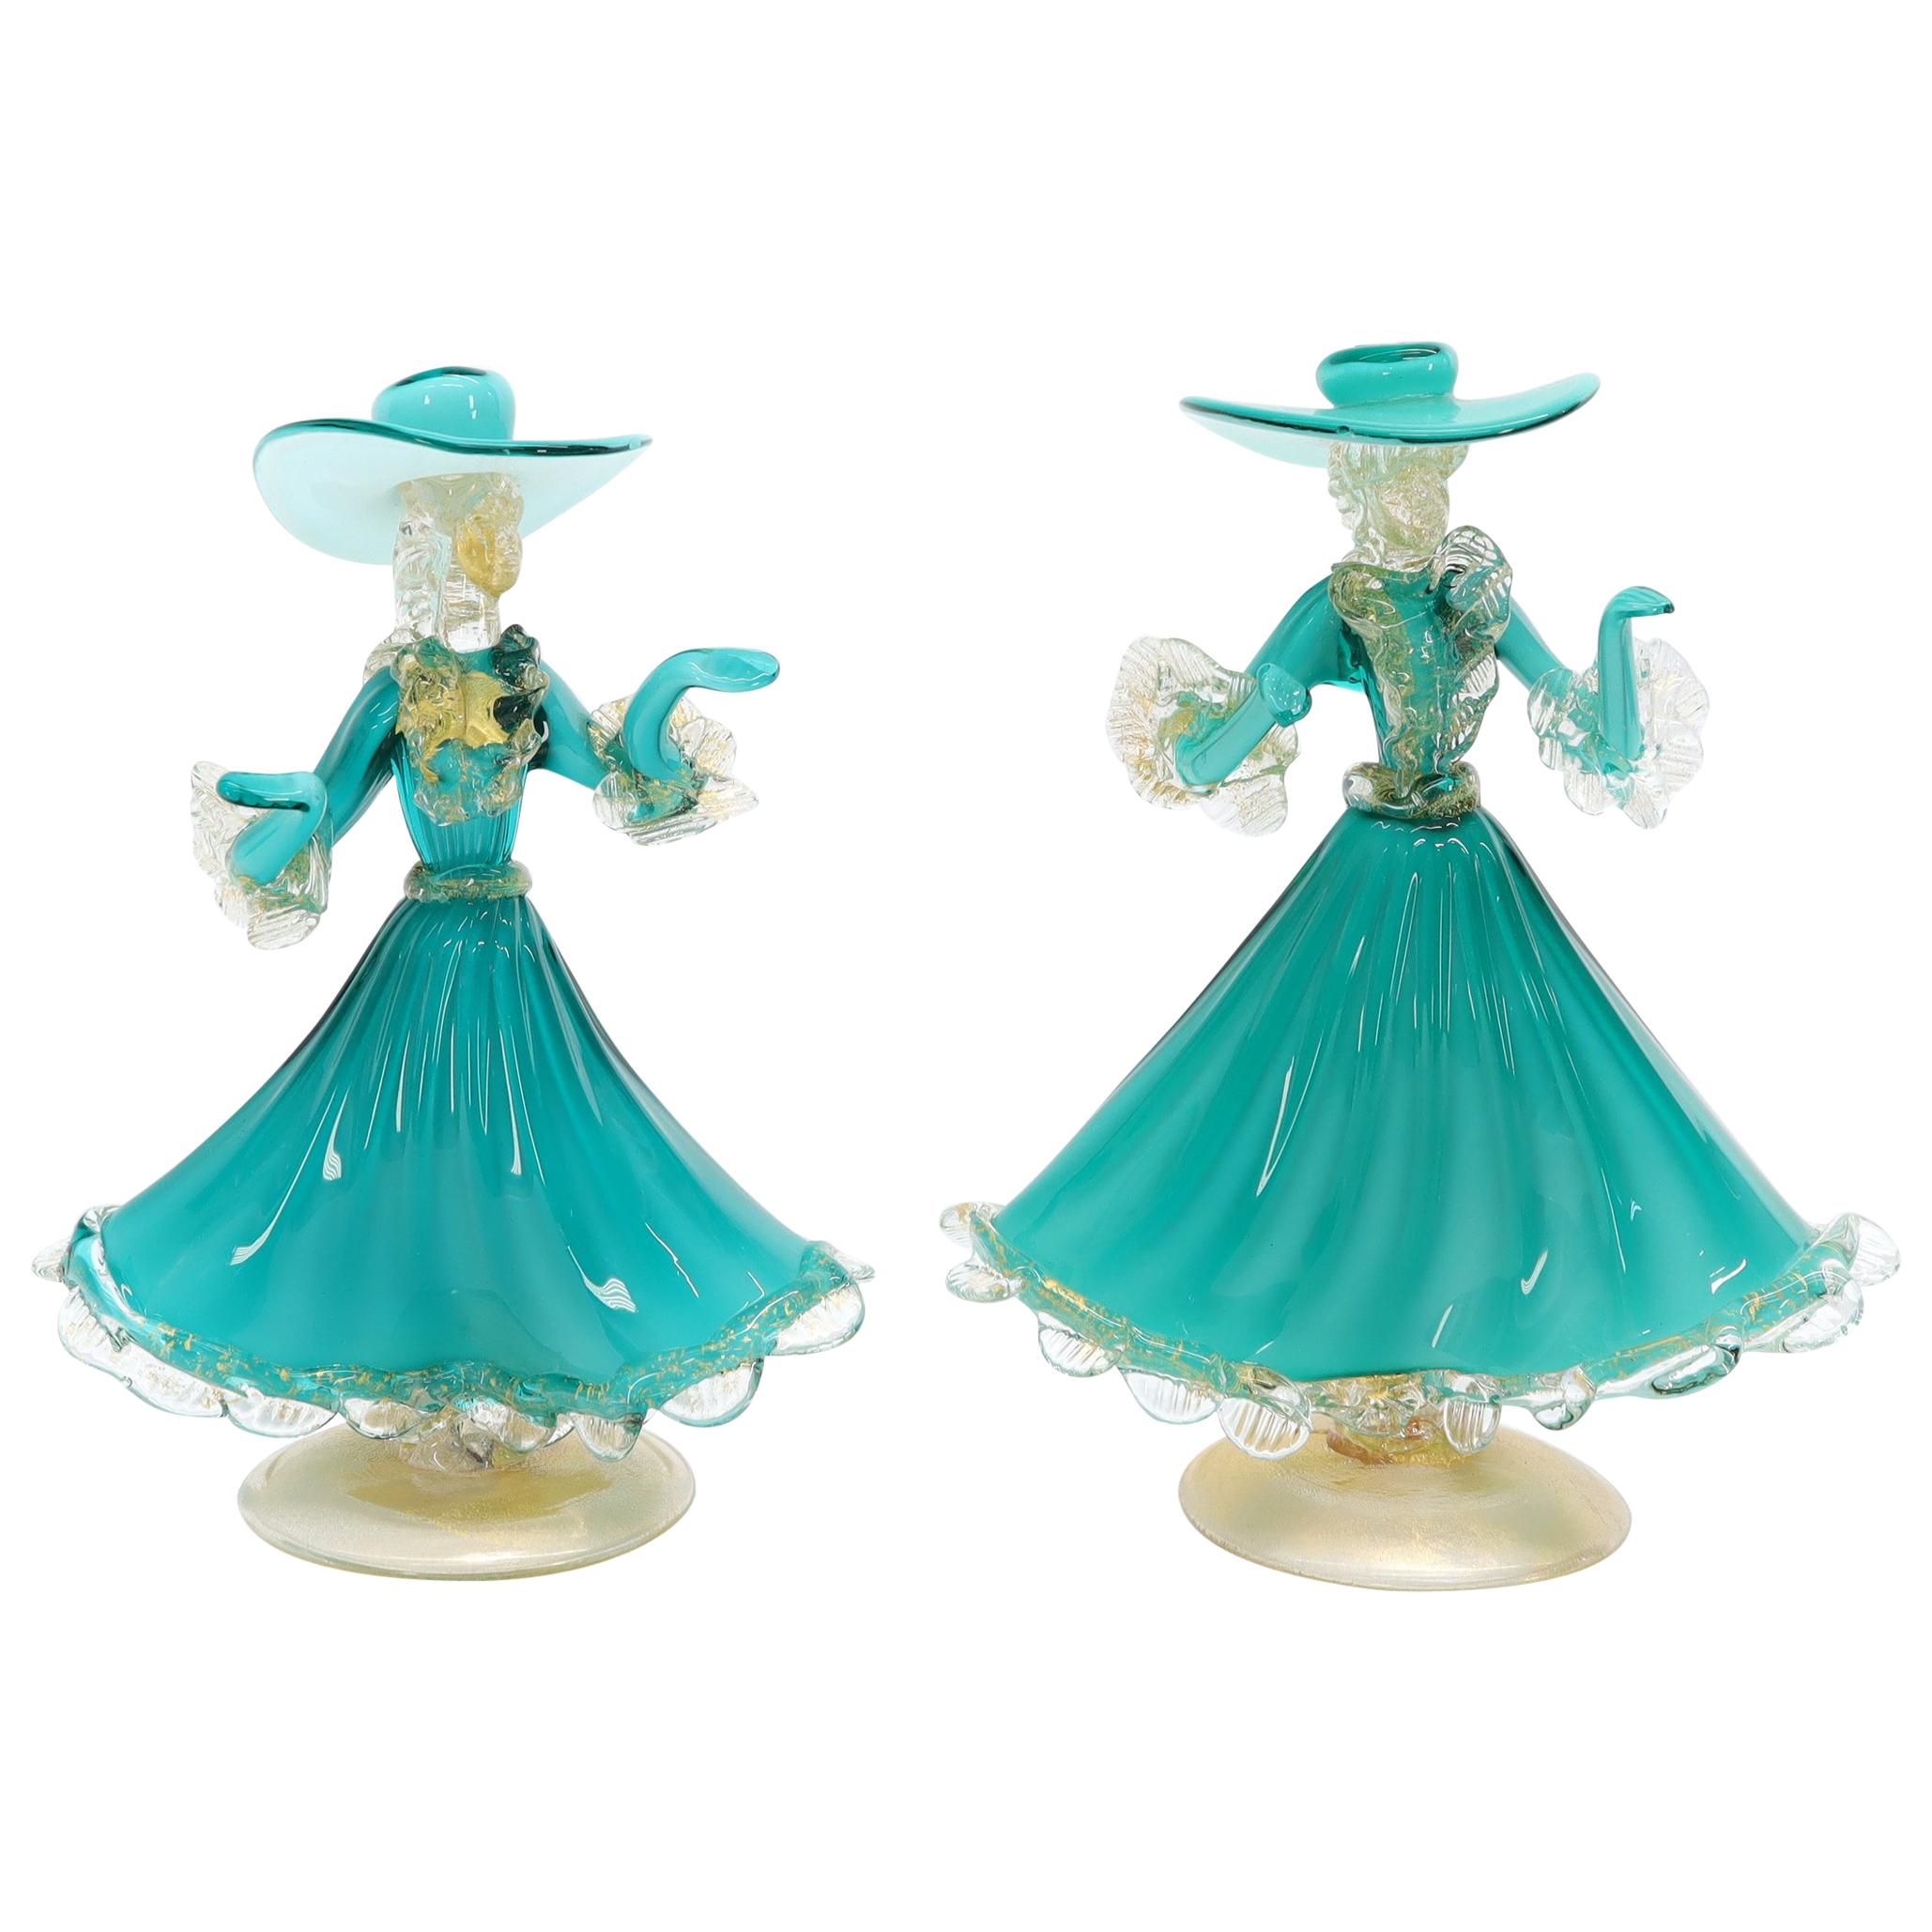 Pair of Murano Glass Dancing Figurines